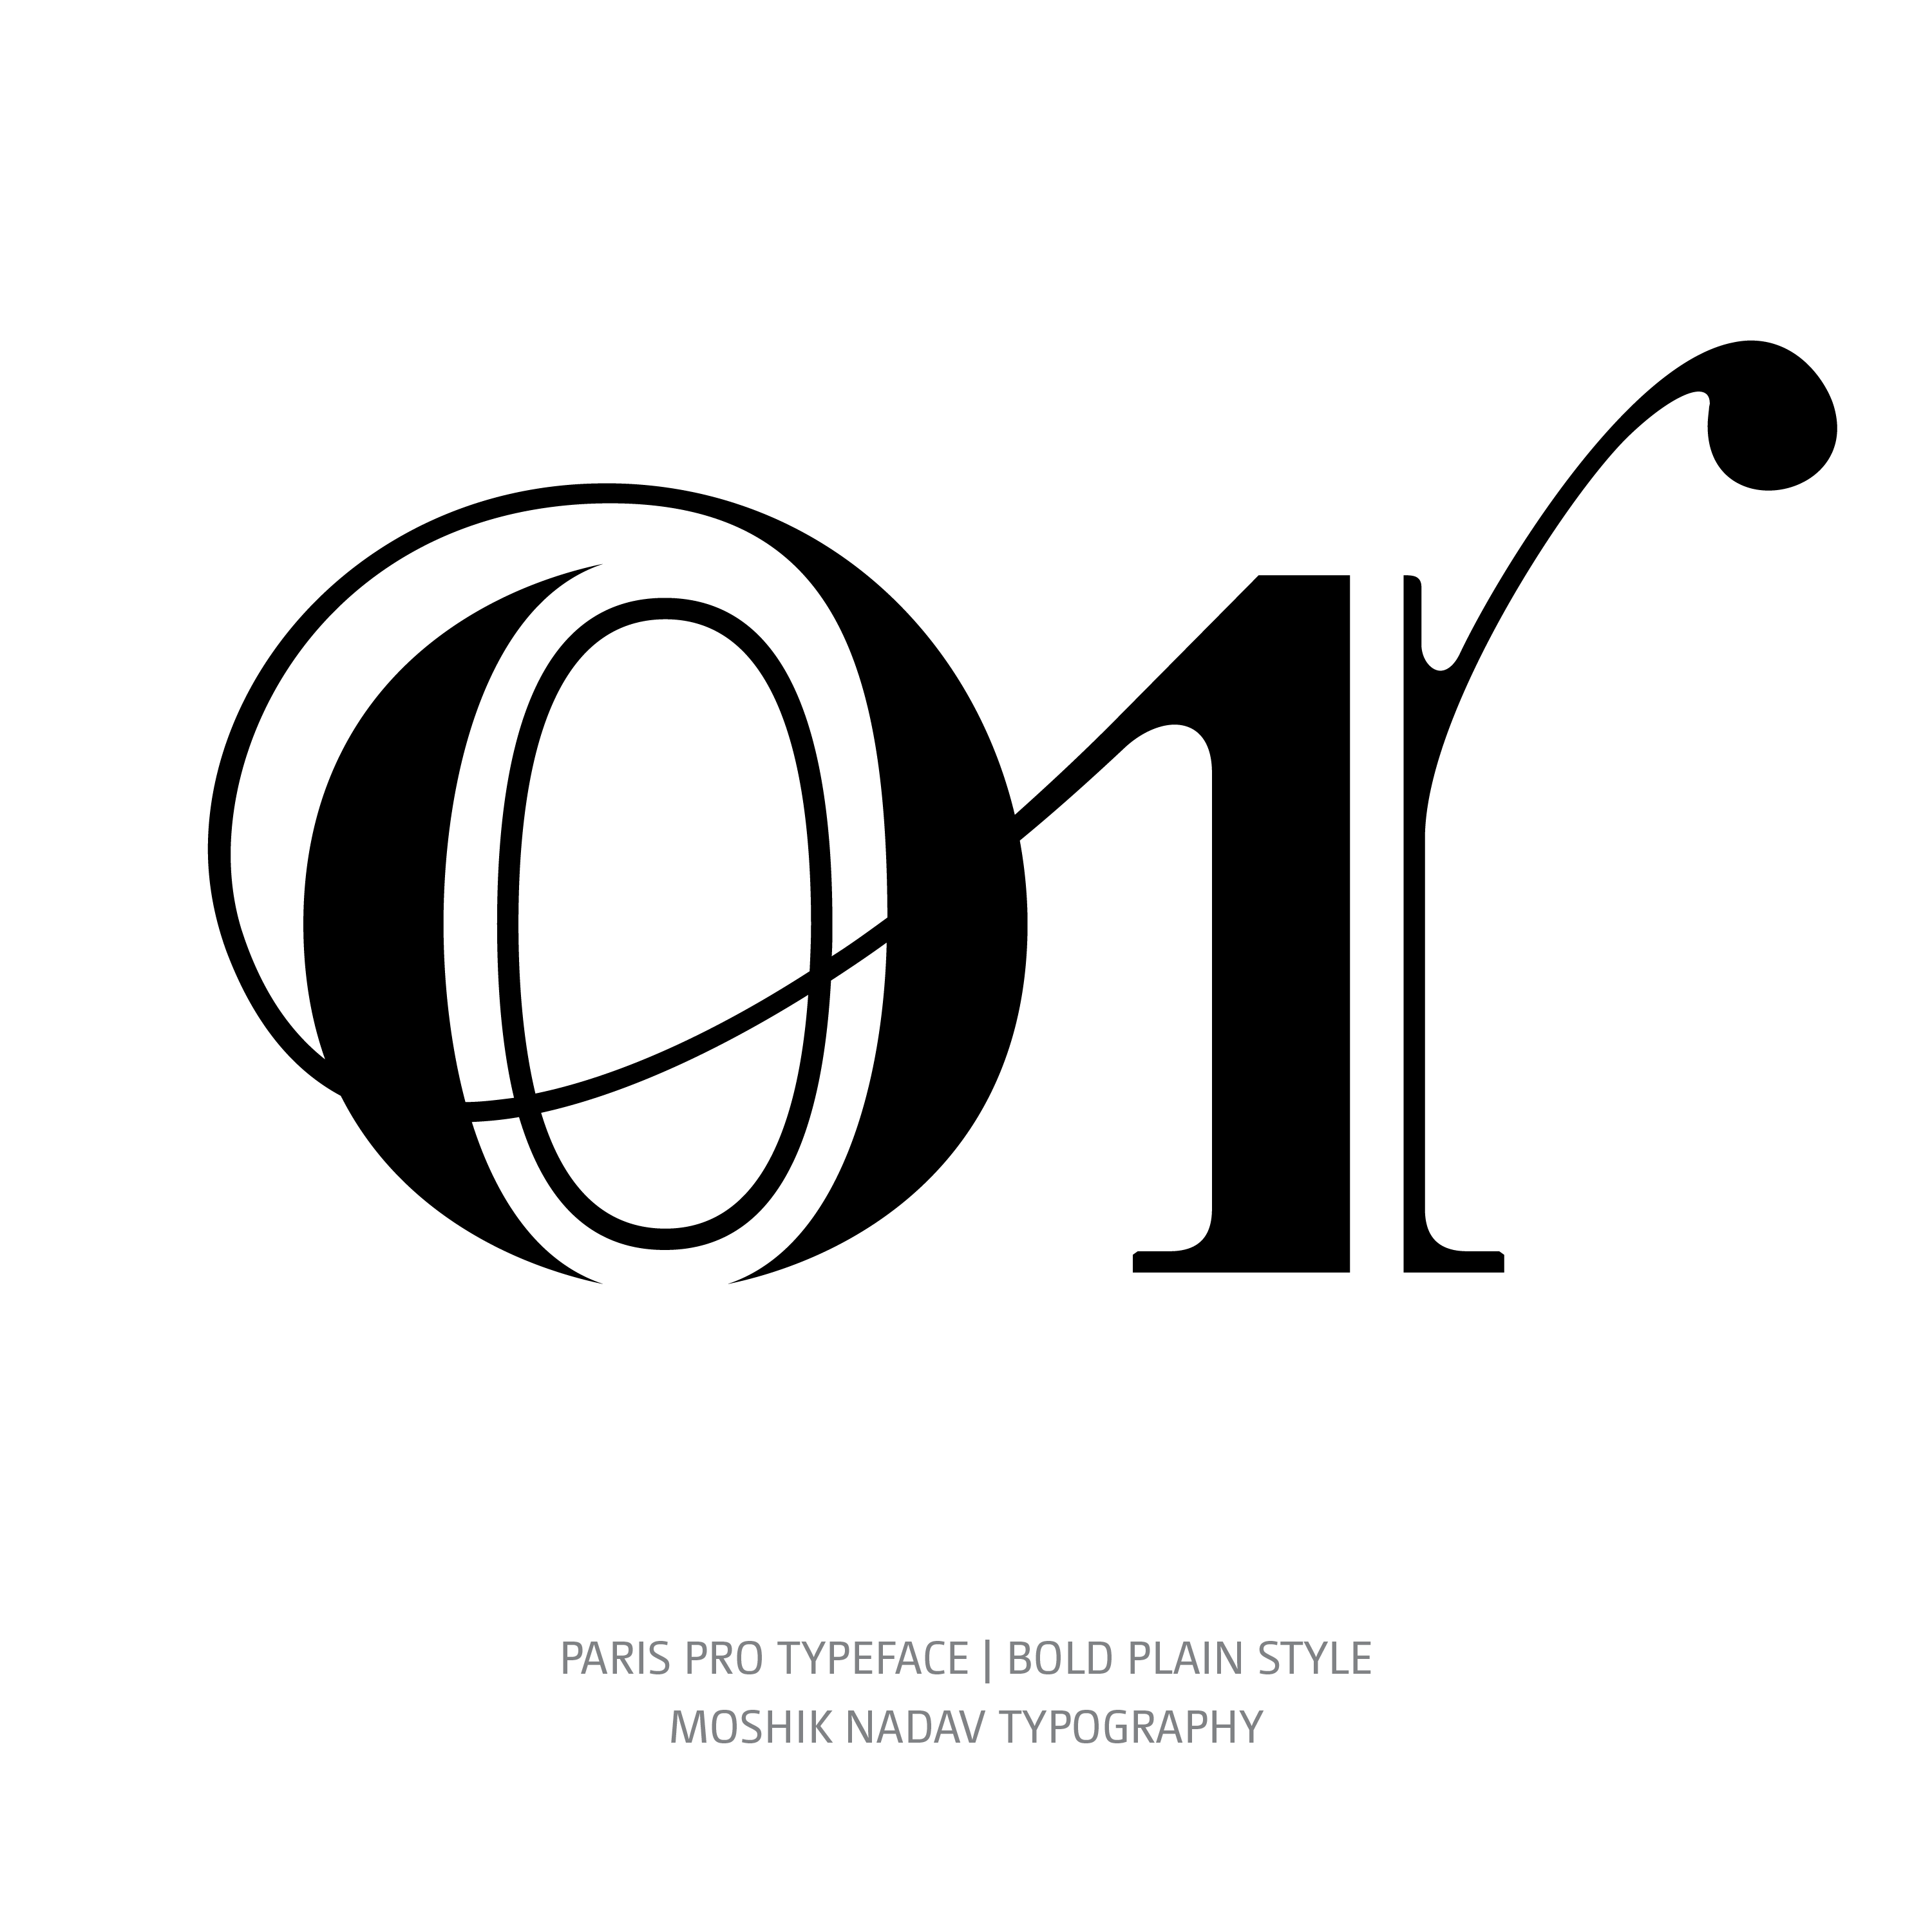 Paris Pro Typeface Bold or ligature